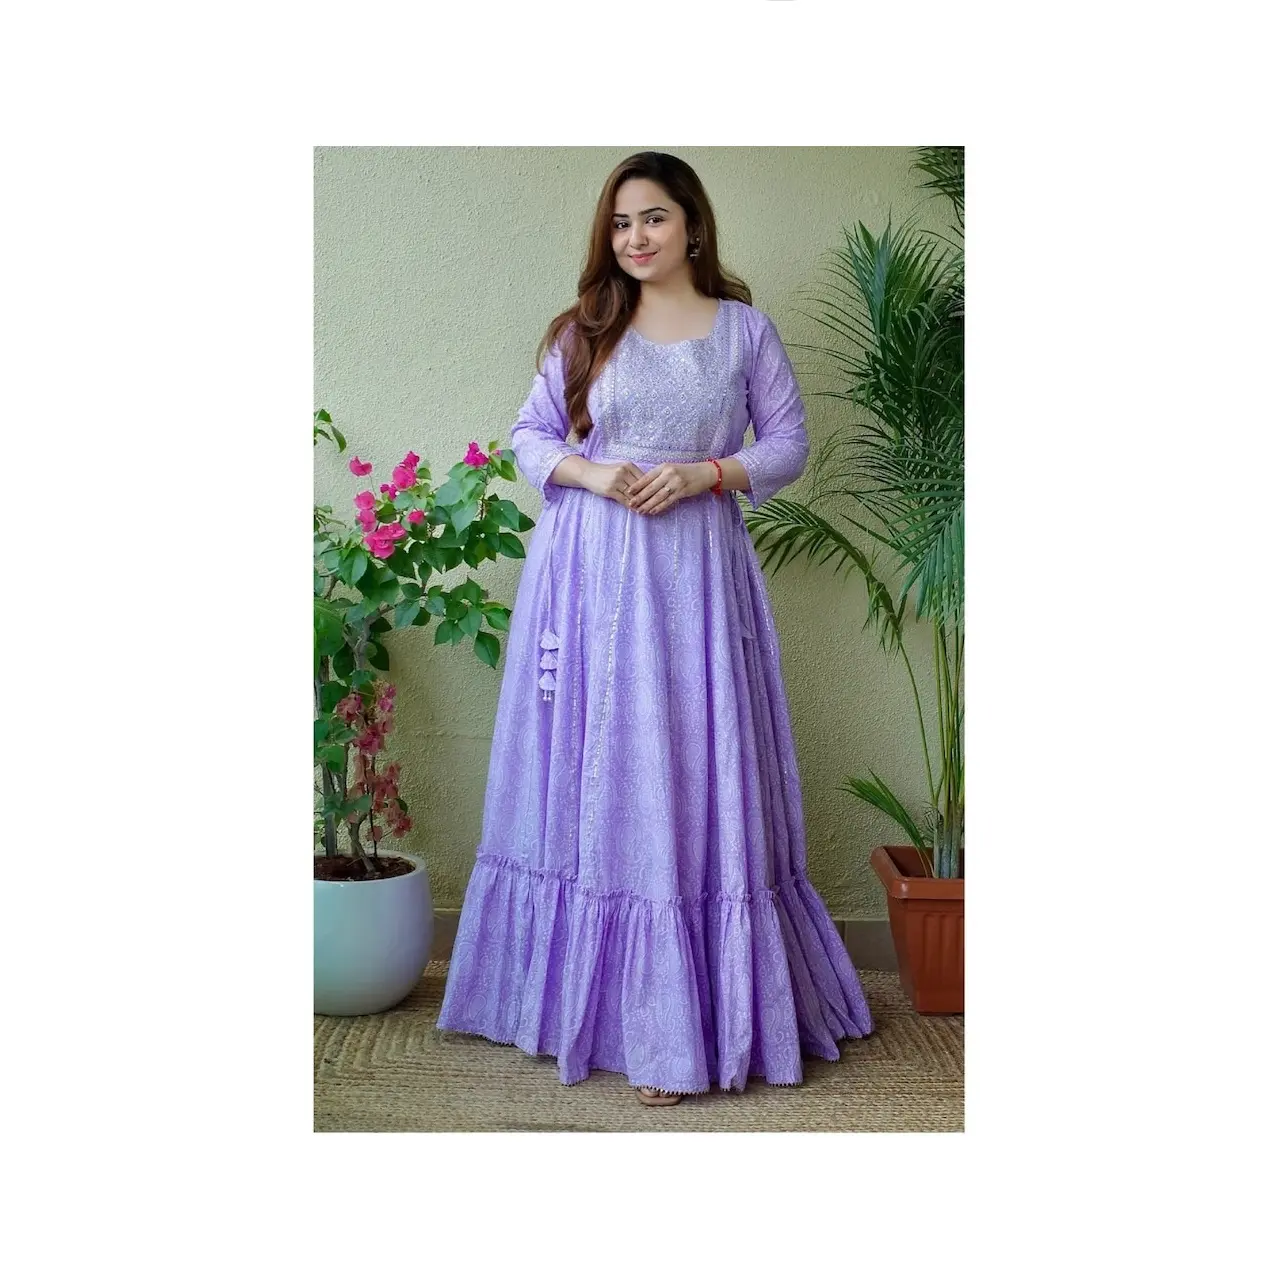 インドからの卸売価格で利用可能なパーティーウェアのための新しいモダンなデザインのレーヨン生地女性服クルティ